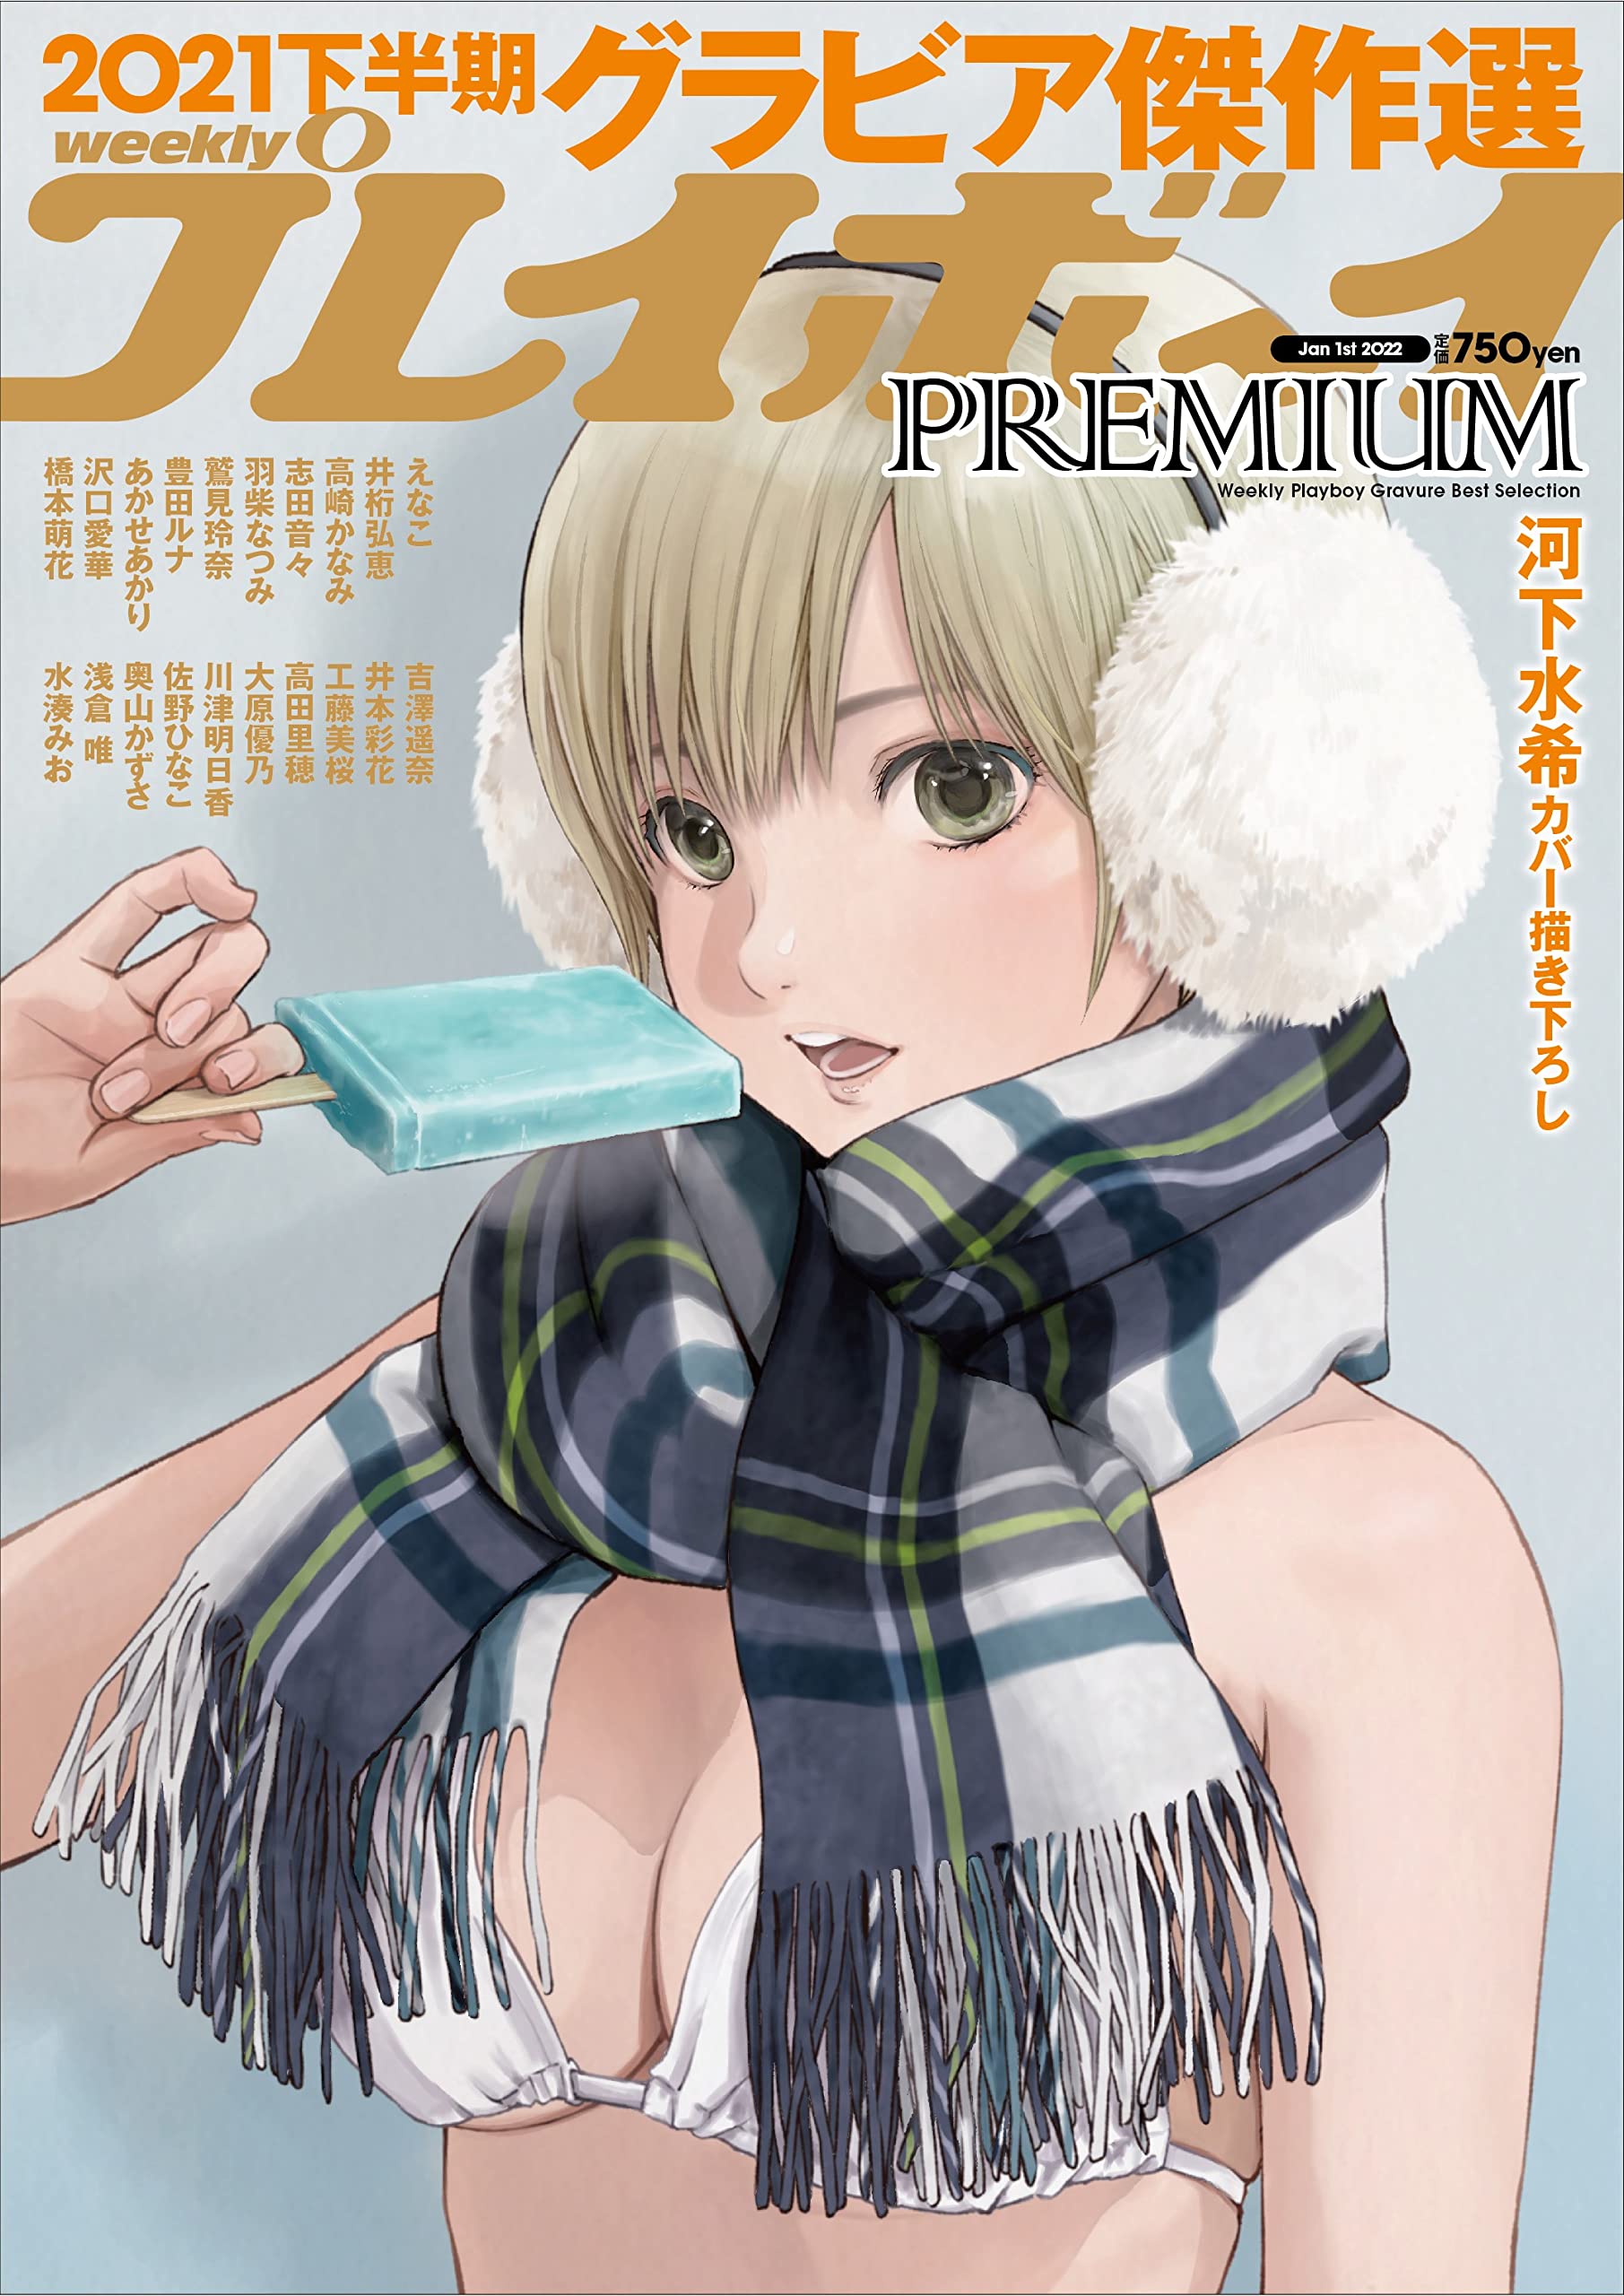 La autora de Ichigo 100% realizó una portada para la revista Playboy